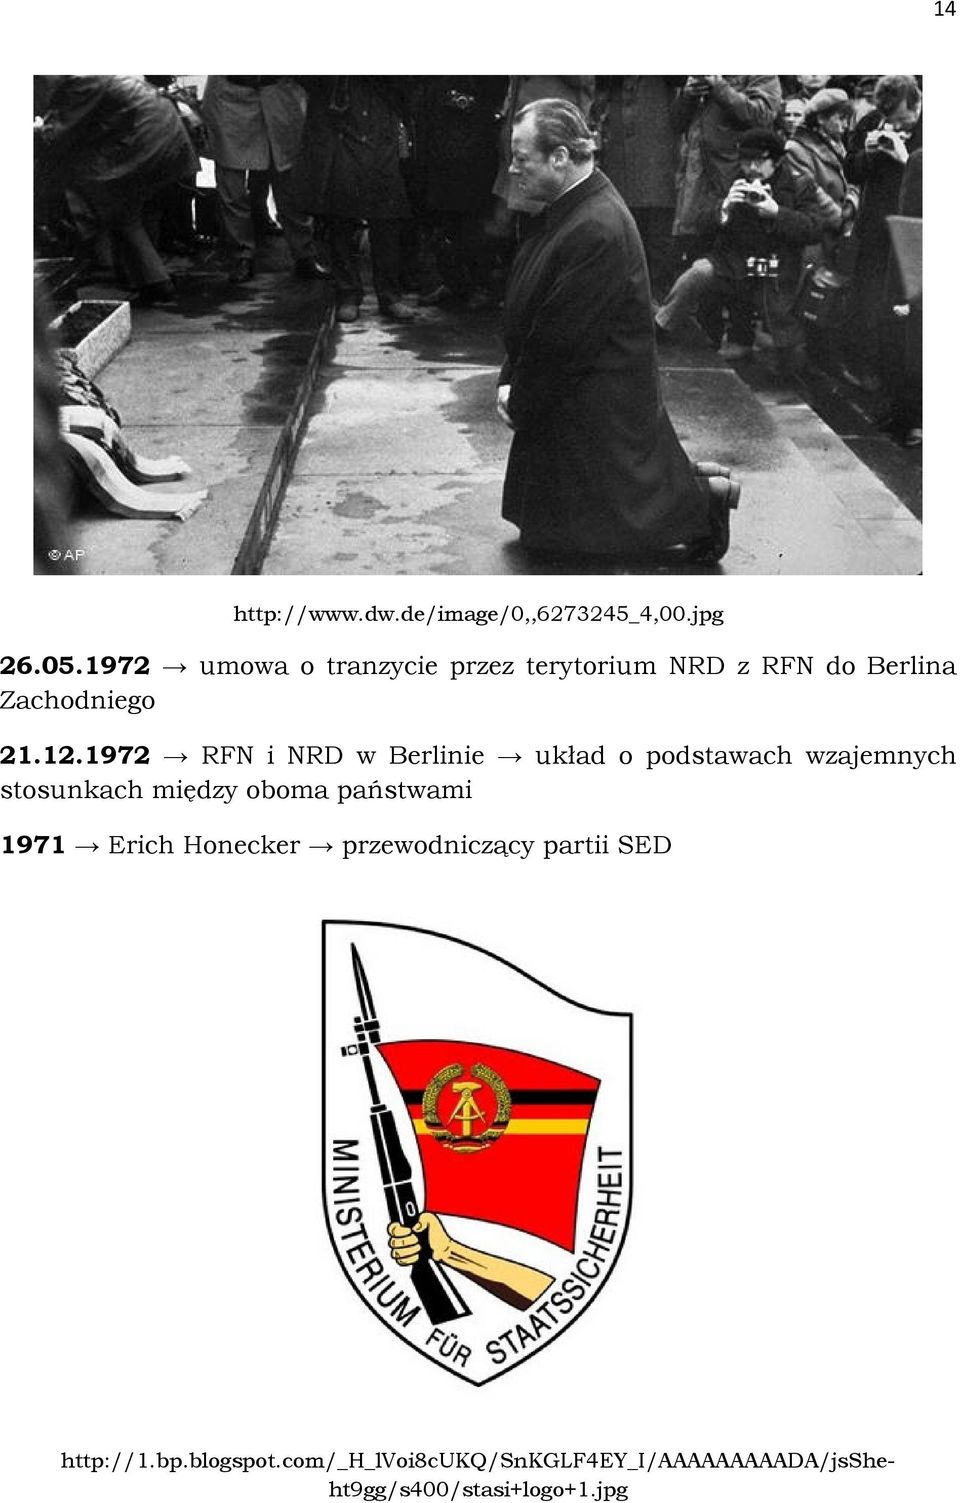 1972 RFN i NRD w Berlinie układ o podstawach wzajemnych stosunkach między oboma państwami